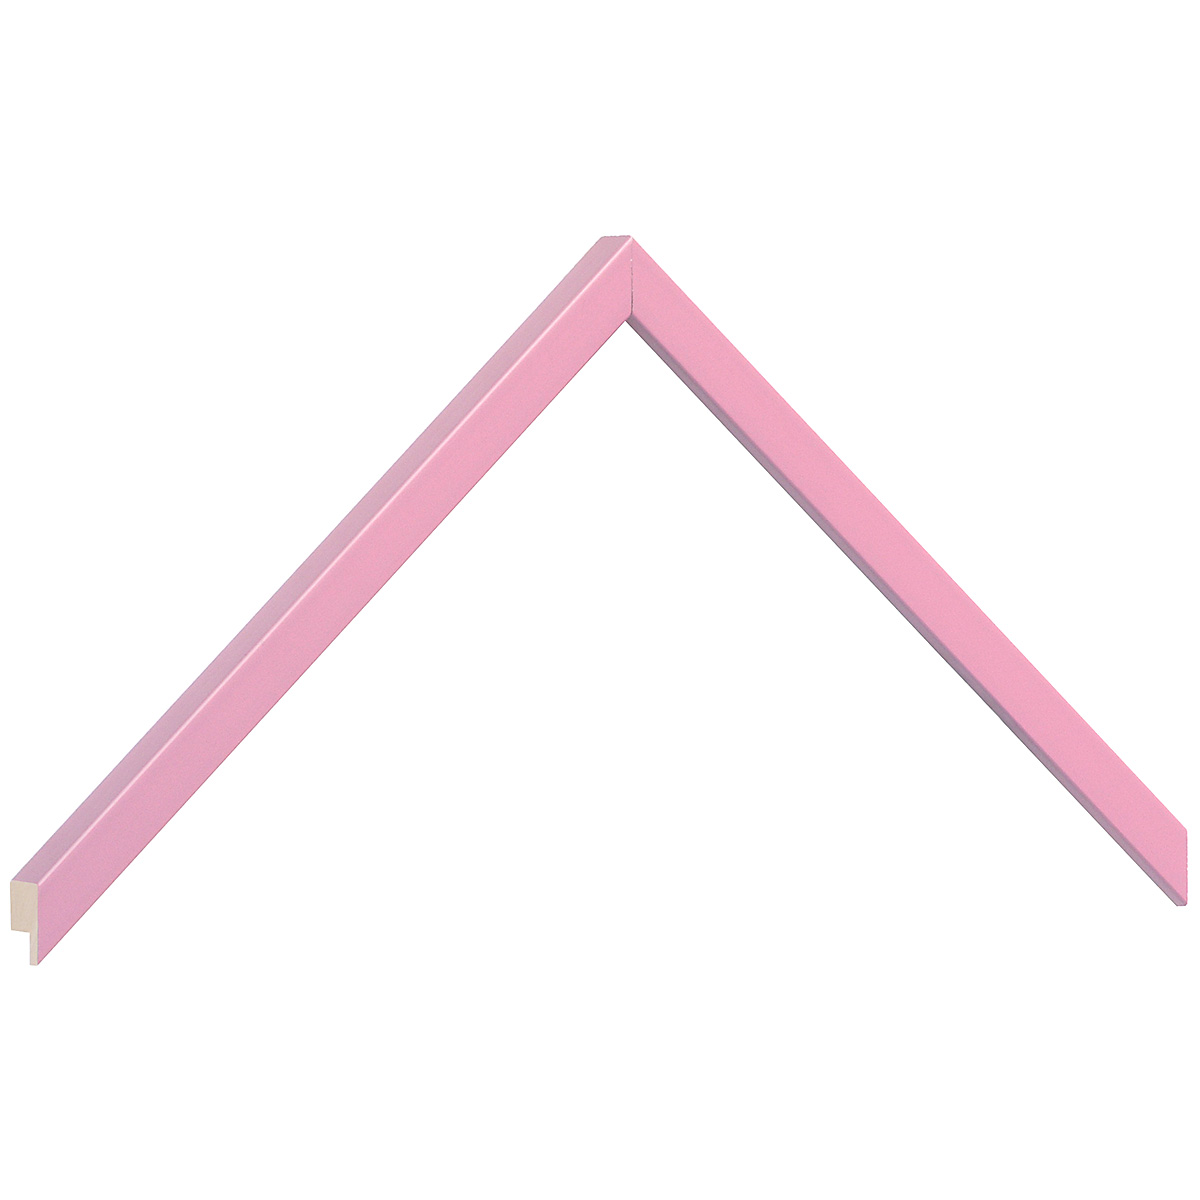 Profil ramin plat 10 mm - finisaj mat - culoare roz - Mostră